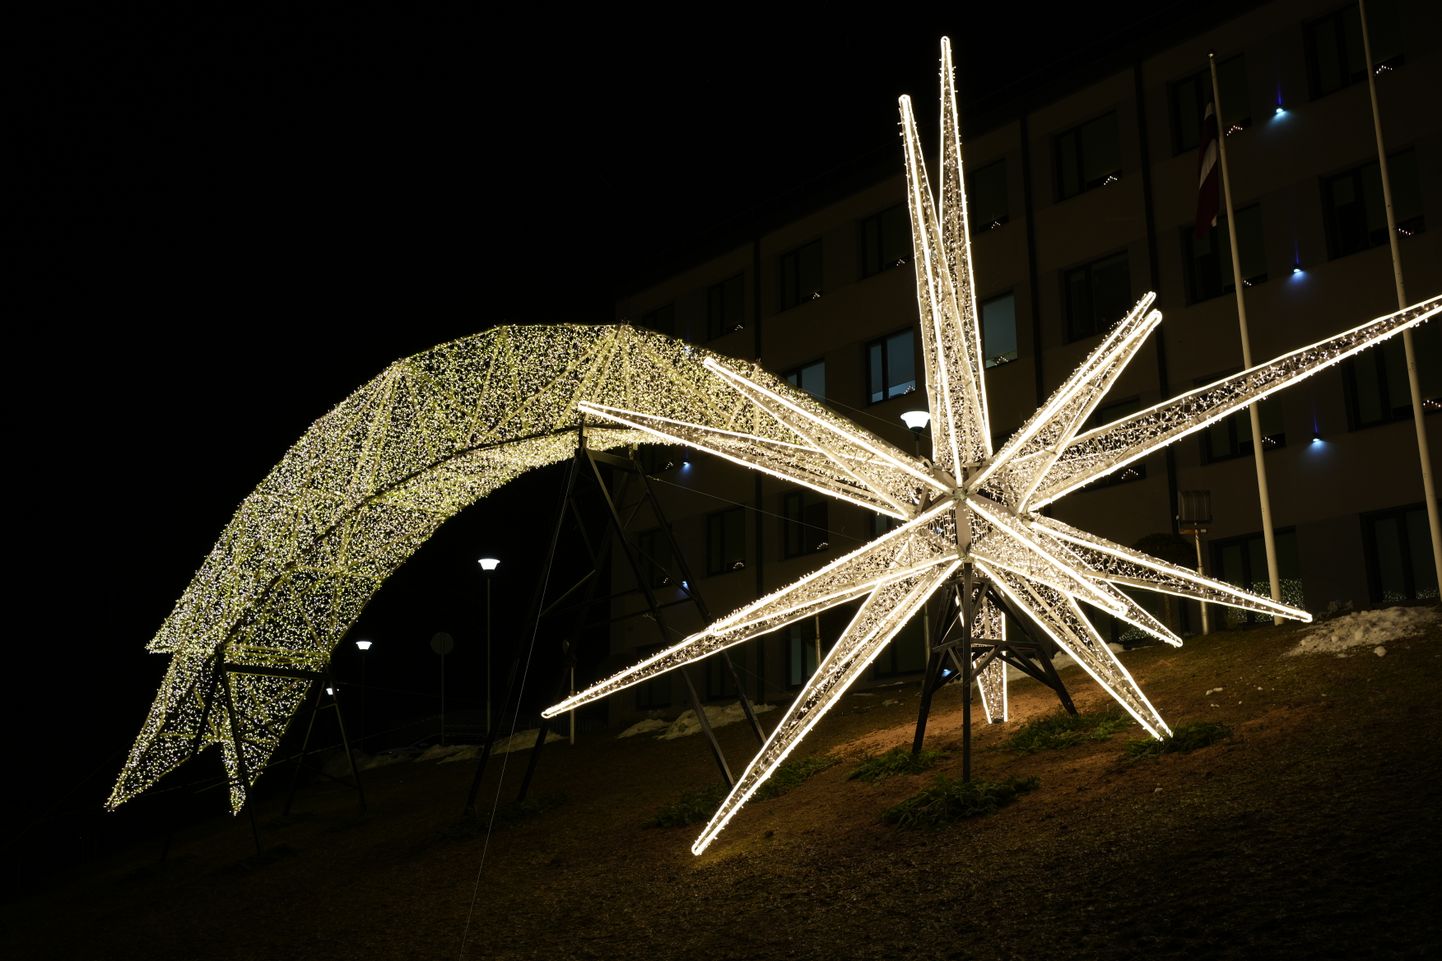 Vides objekts Bētlemes zvaigzne Ogrē – lielākā vienapjoma dekorācija Baltijas valstīs. Ziemassvētku dekorācijas svars ir 2,4 tonnas, un tā veidota no vairāk nekā 66 tūkstošiem metru LED diožu virteņu, kas savijas vairāk nekā 6 kilometros.